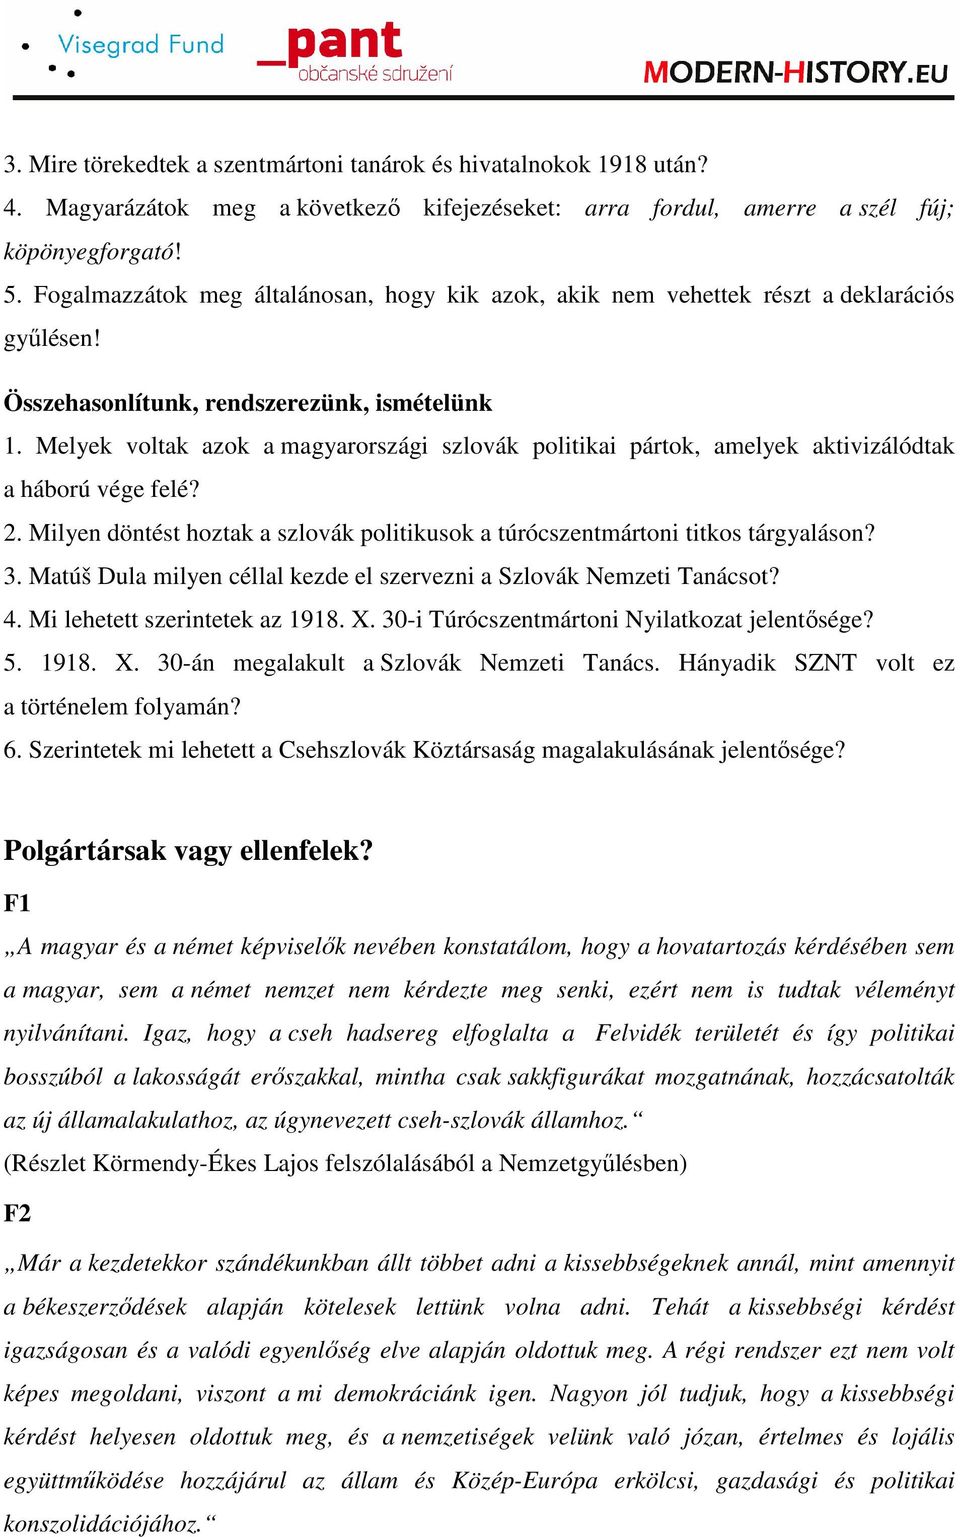 Melyek voltak azok a magyarországi szlovák politikai pártok, amelyek aktivizálódtak a háború vége felé? 2. Milyen döntést hoztak a szlovák politikusok a túrócszentmártoni titkos tárgyaláson? 3.